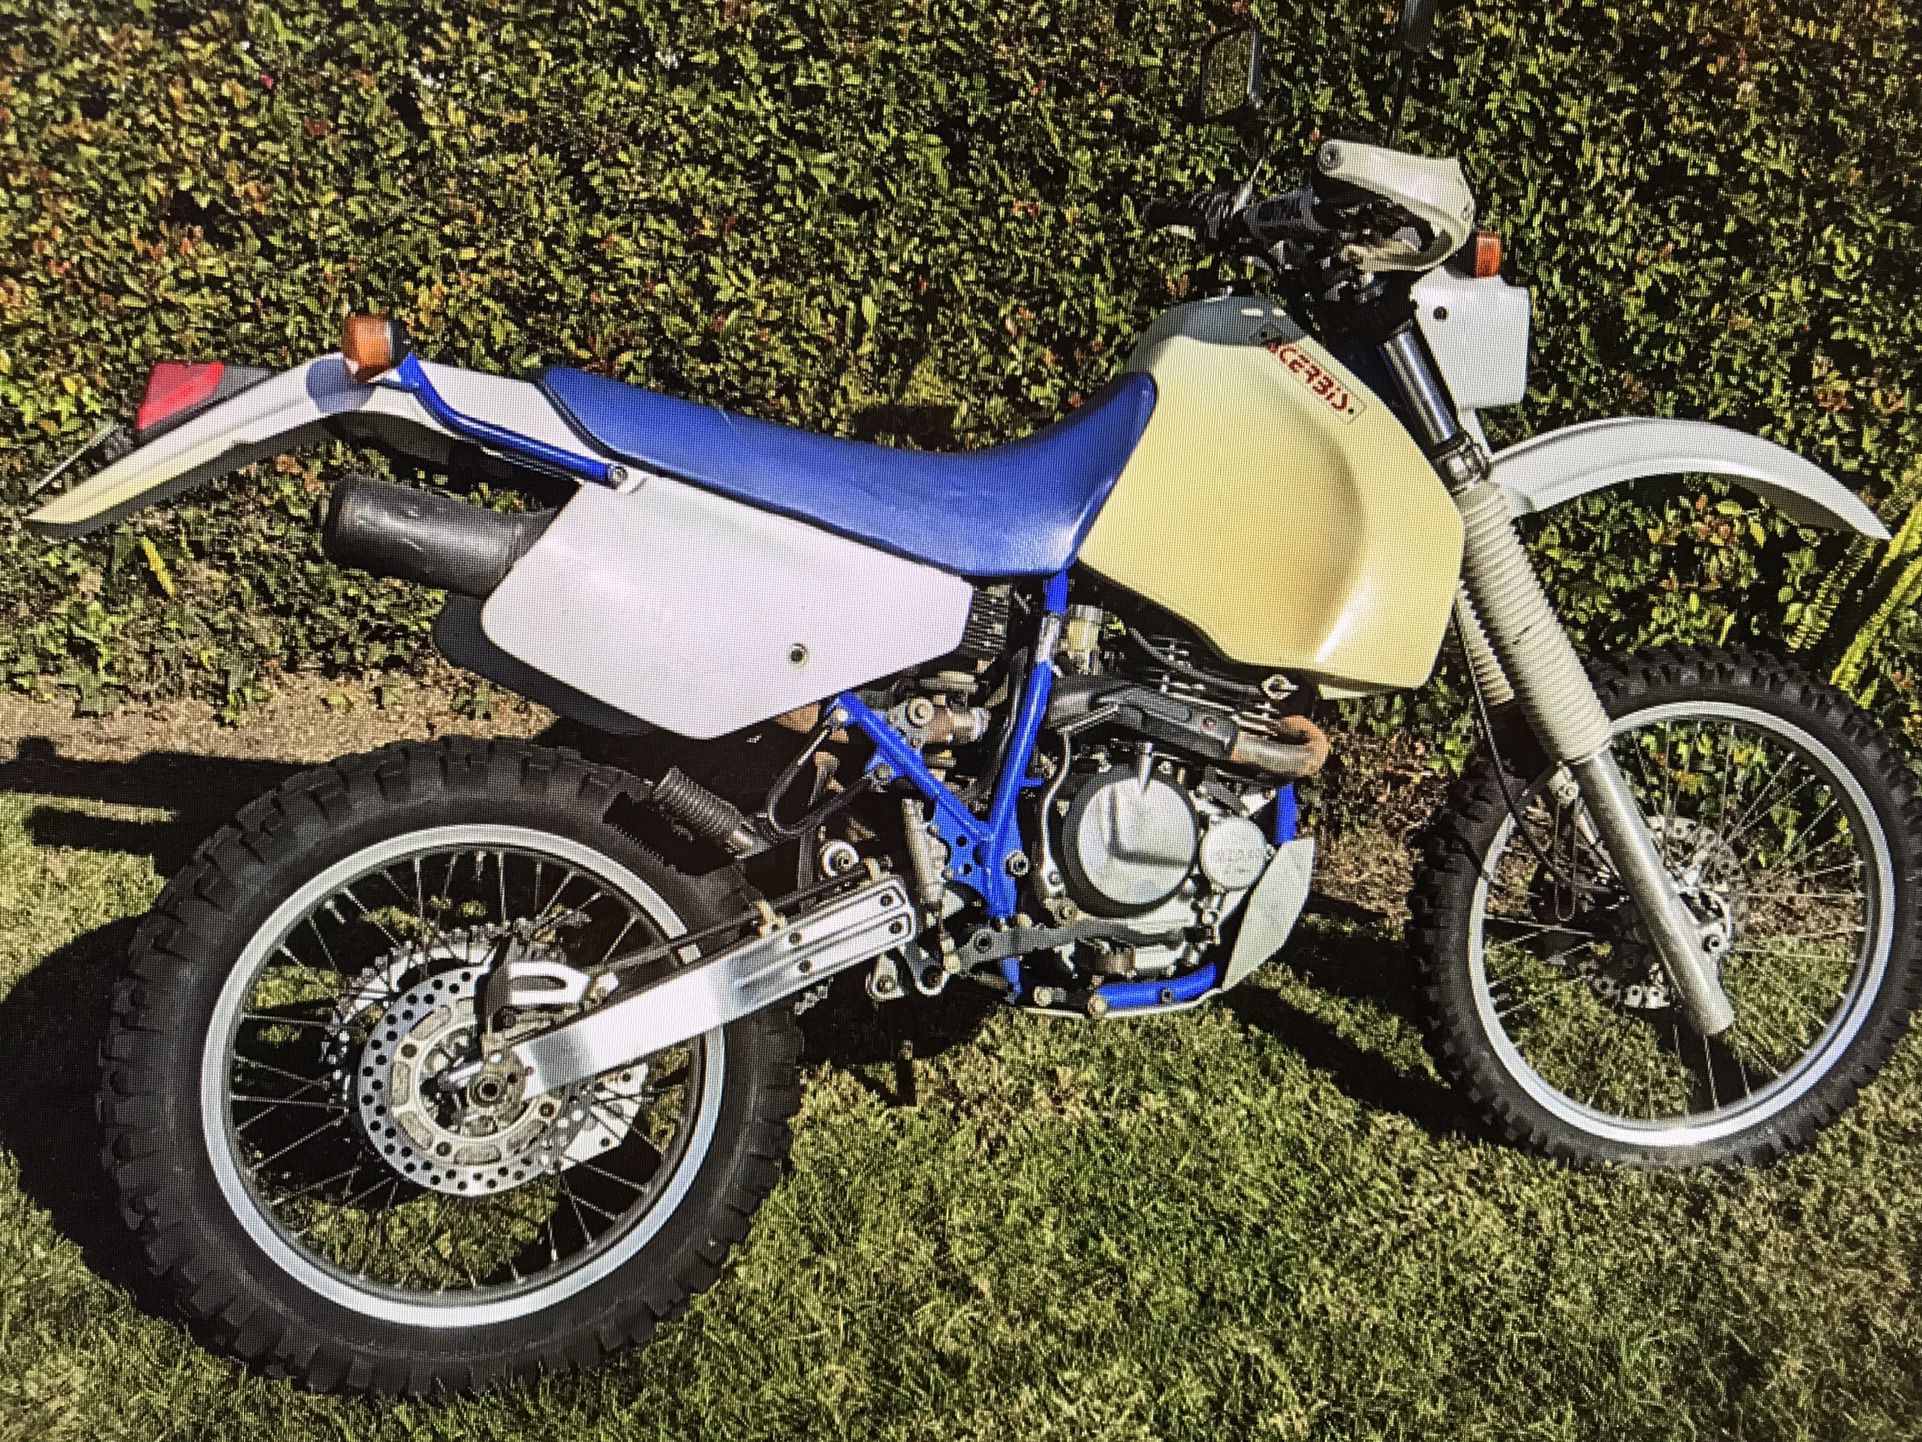 1993 Suzuki Gas Motorcycle not electric, kick start not electric start DR350S GAS motorcycle not electric, kick start not electric start